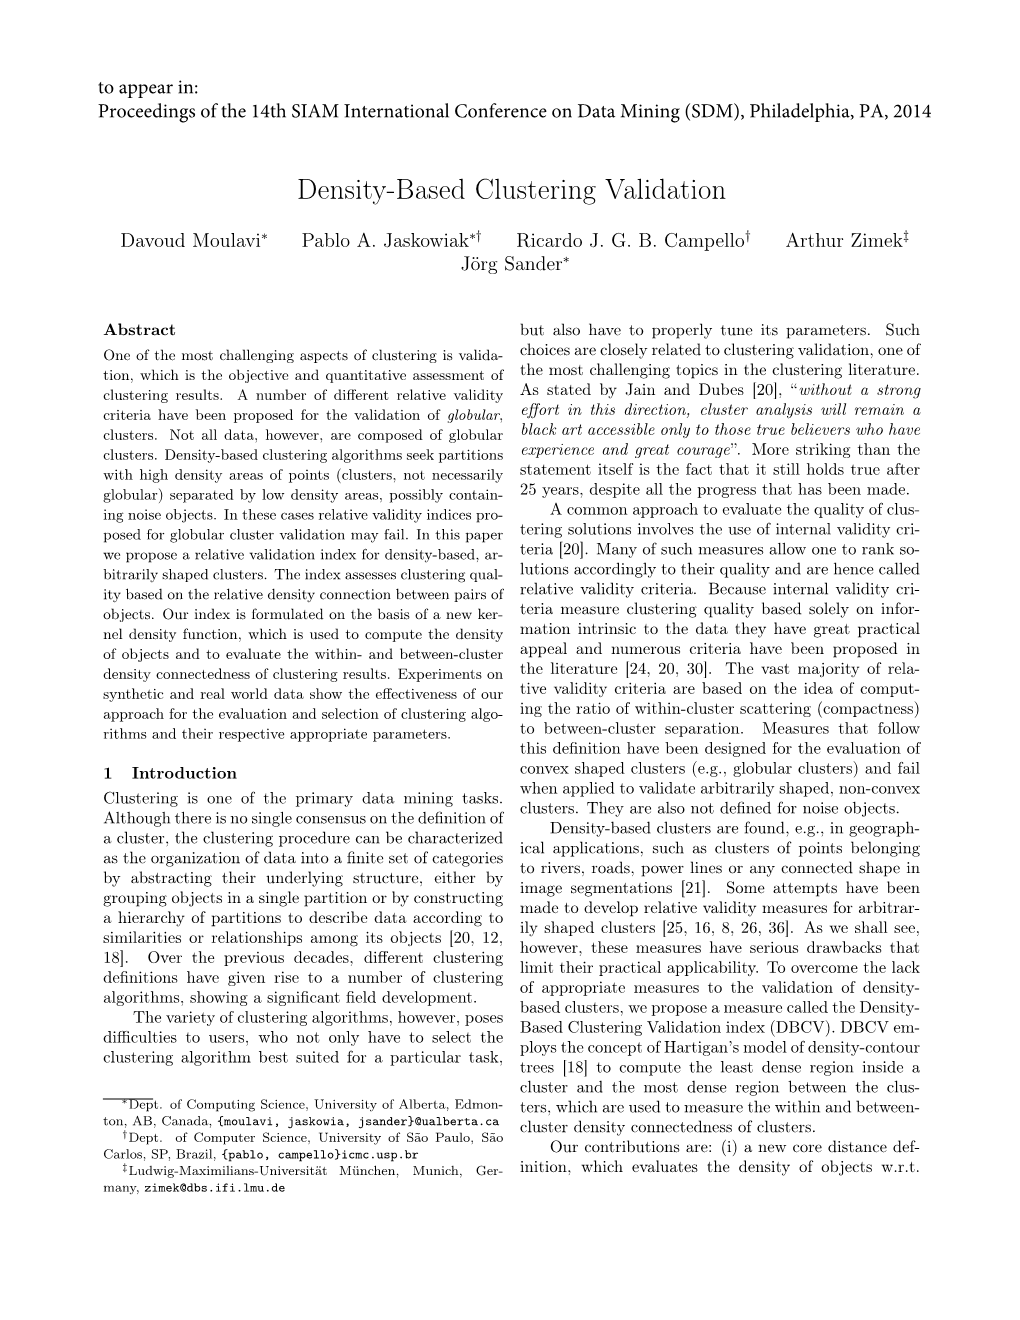 Density-Based Clustering Validation